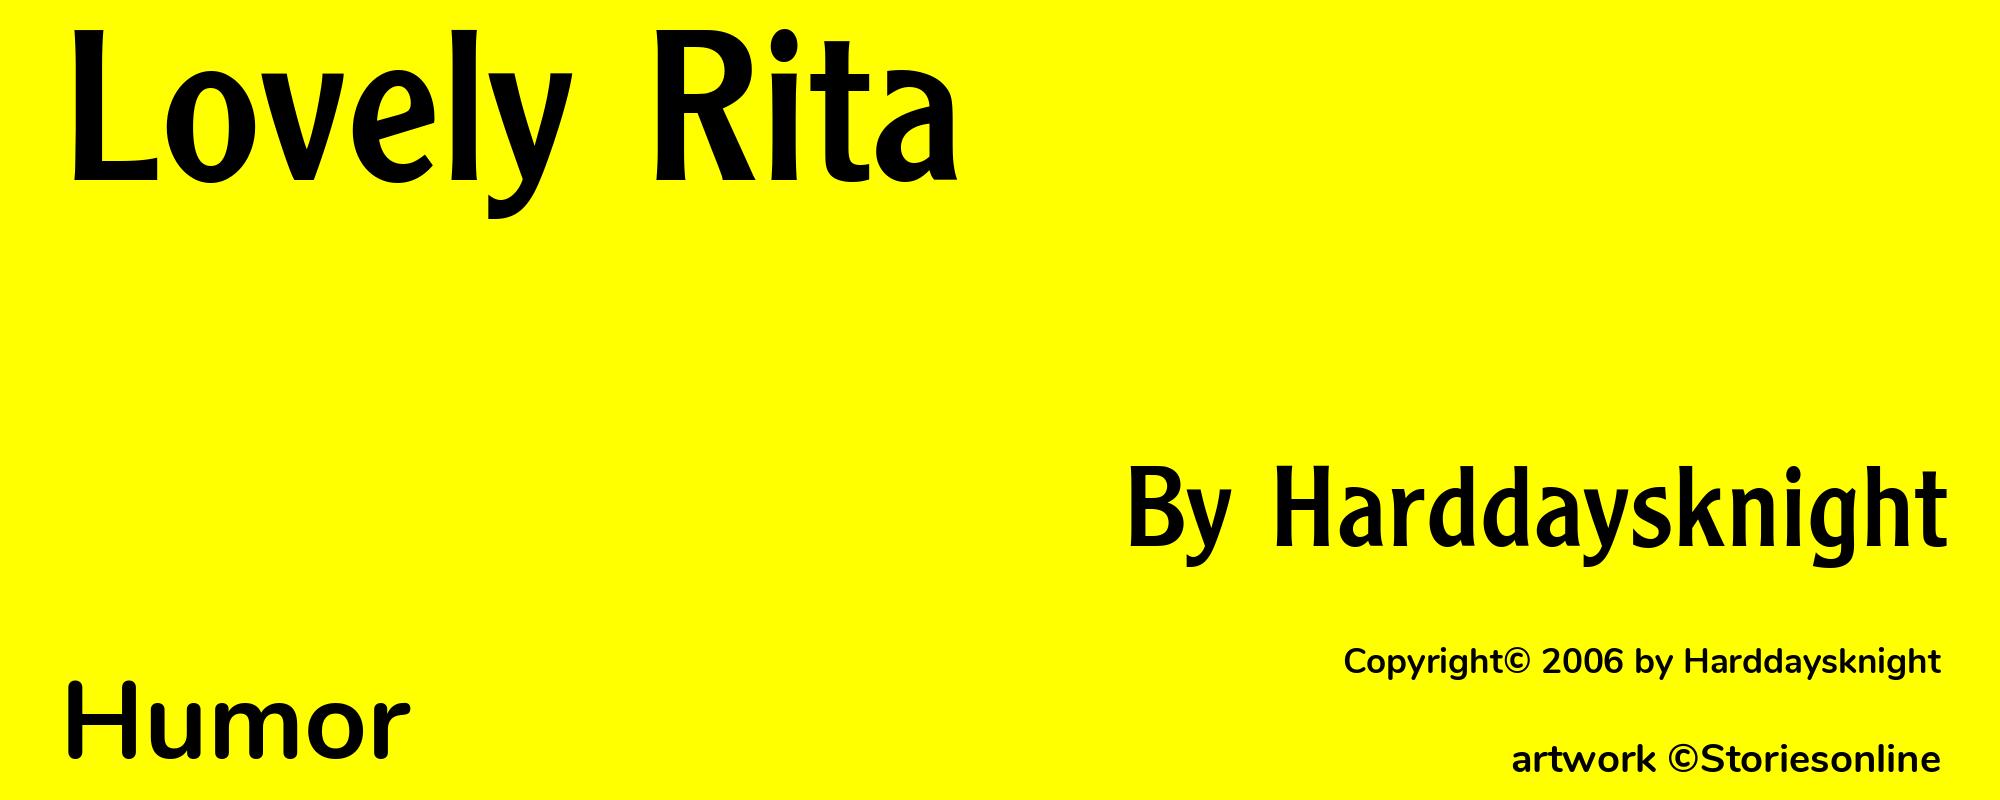 Lovely Rita - Cover